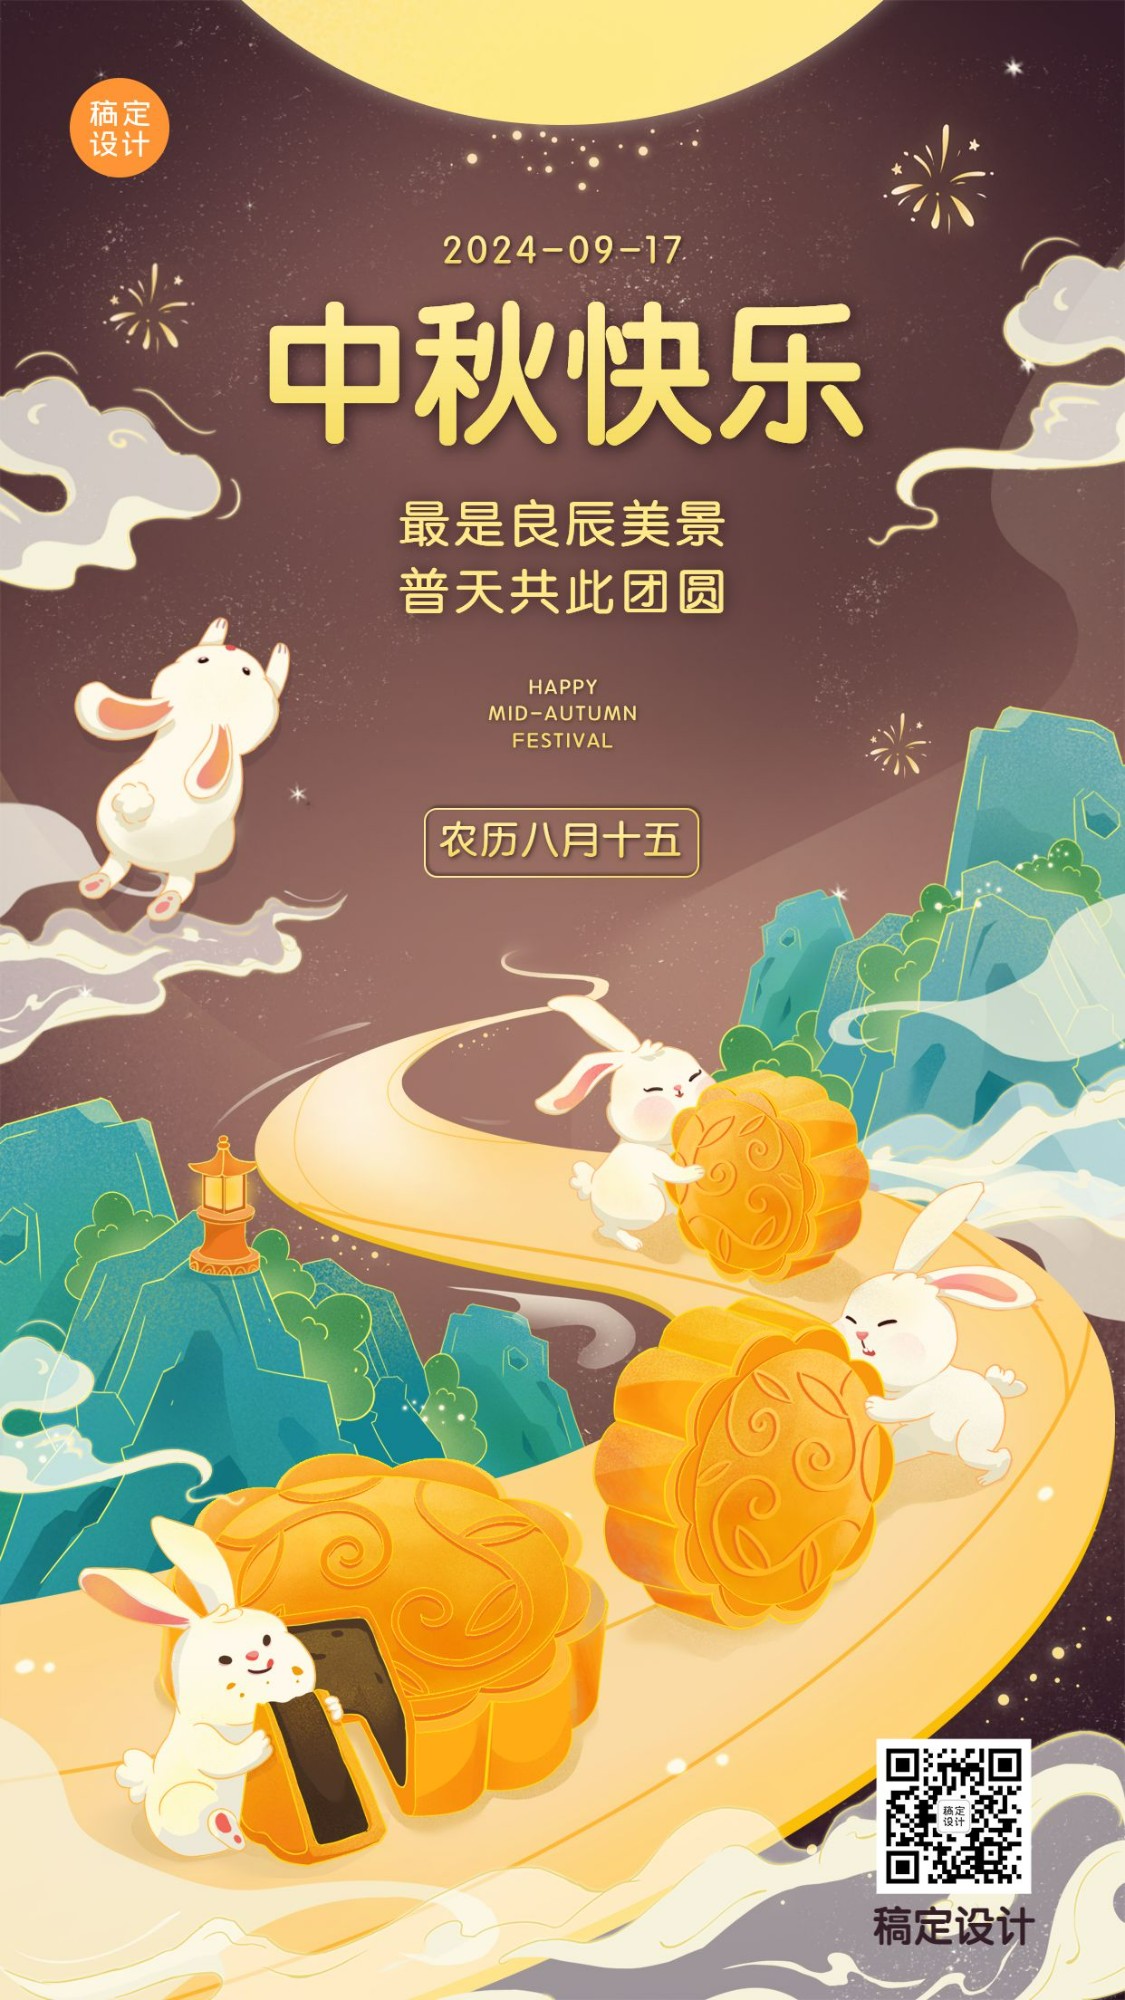 中秋节祝福团圆兔子手绘手机海报预览效果